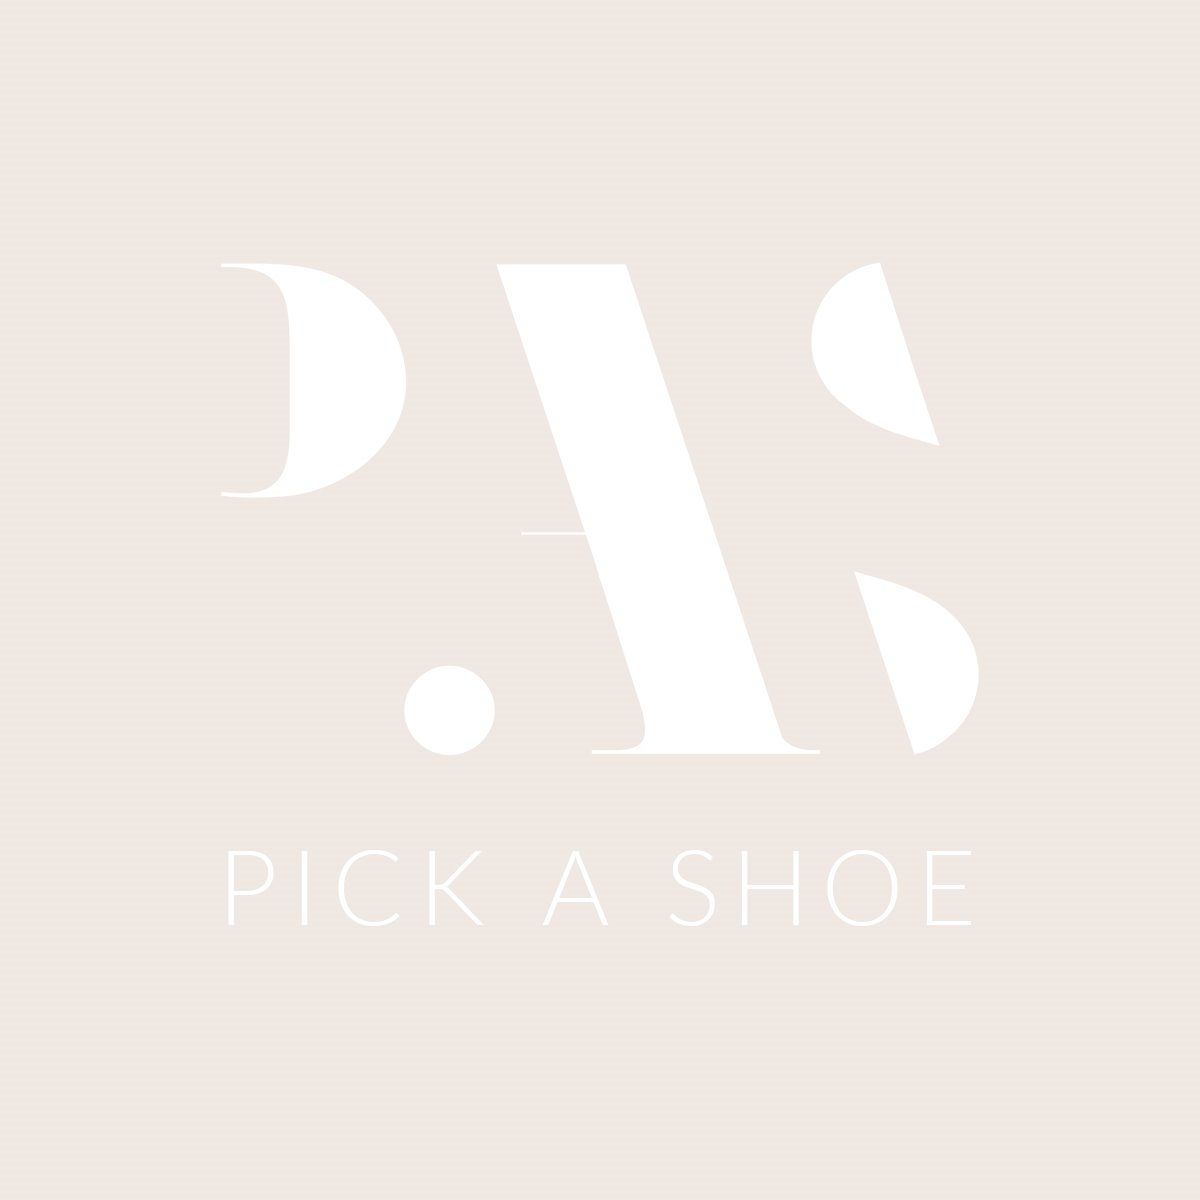 Logo Pick a Shoe